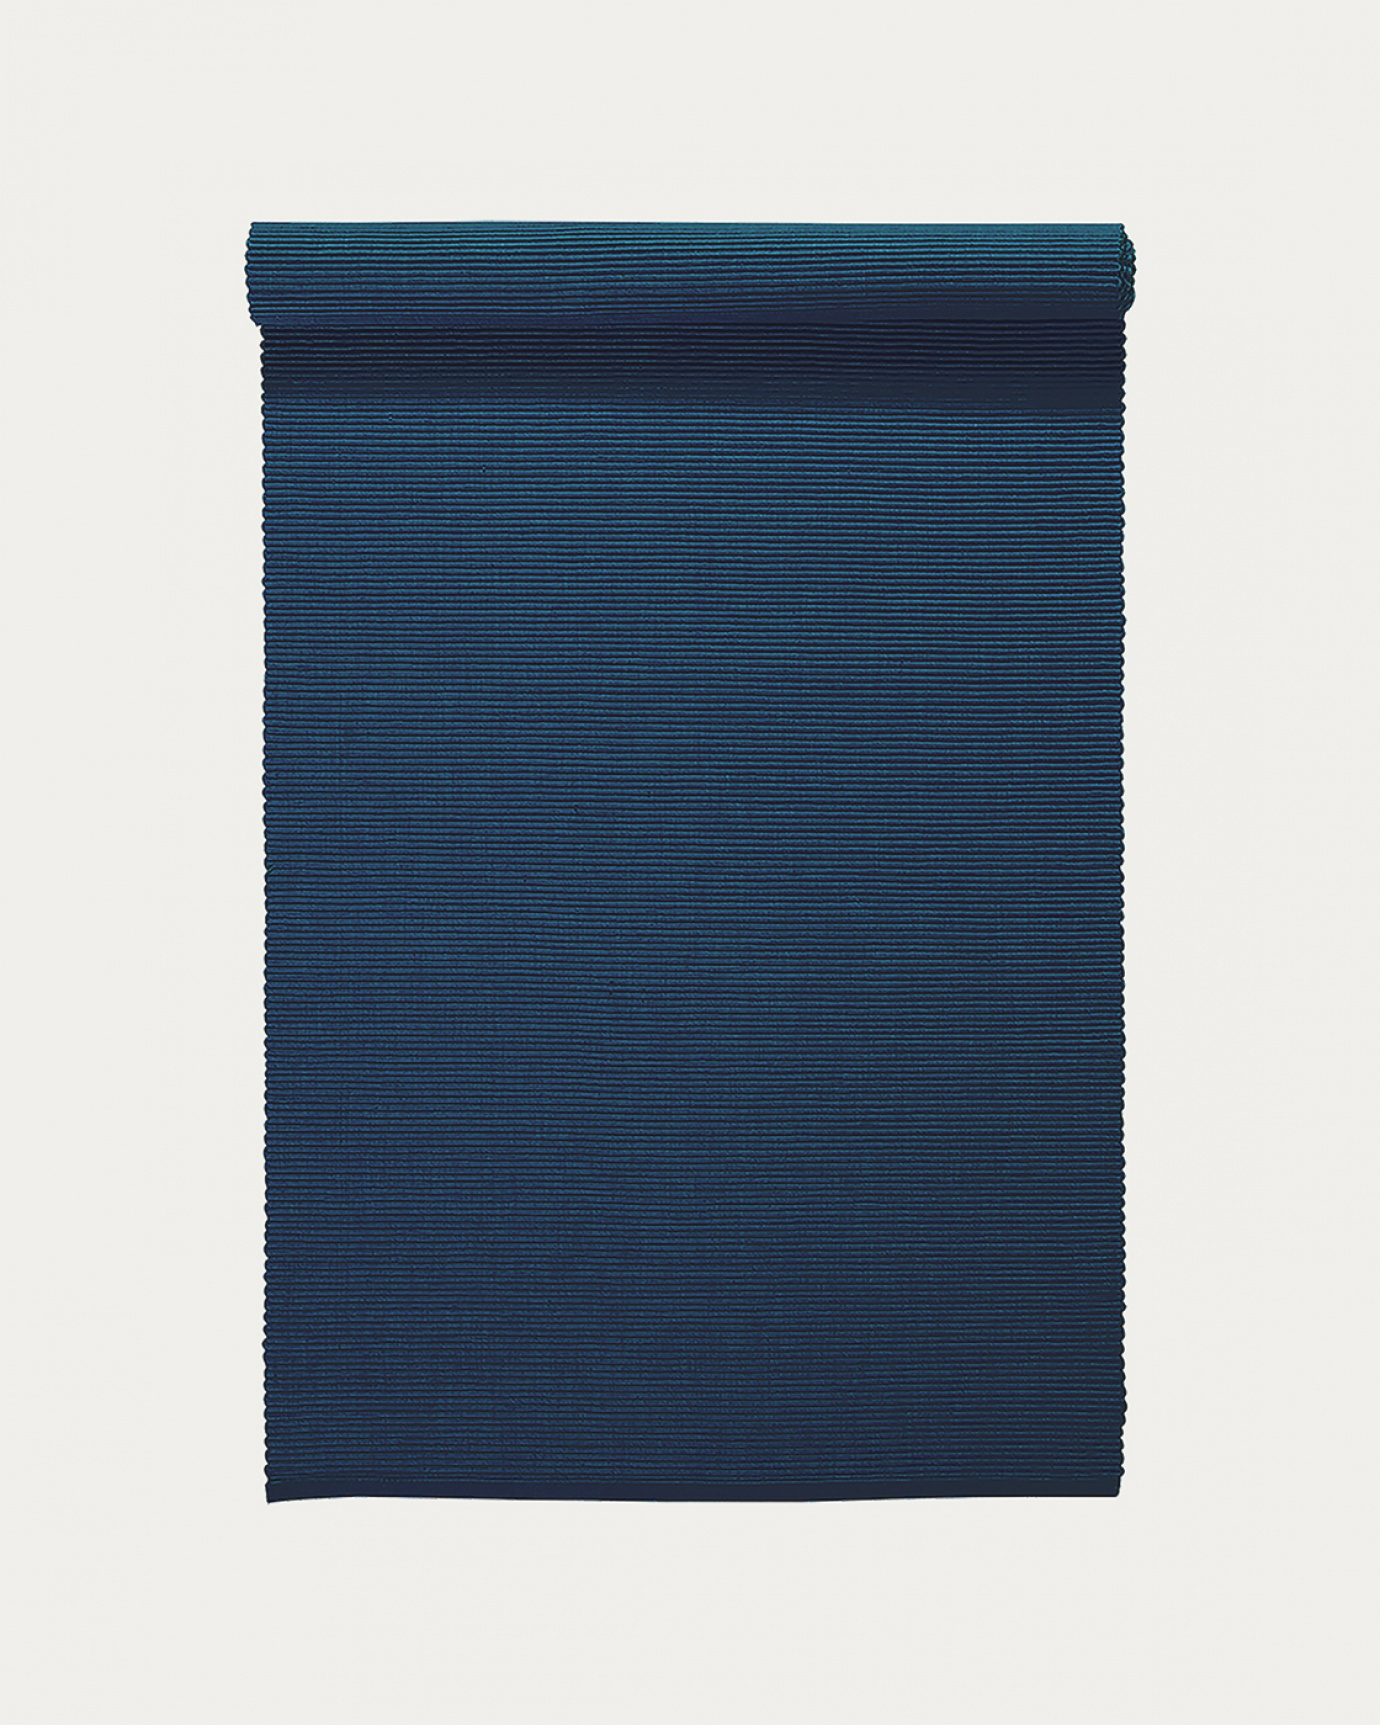 Image du produit chemin de table UNI bleu nuit en coton doux de qualité côtelée de LINUM DESIGN. Taille 45 x 150 cm.